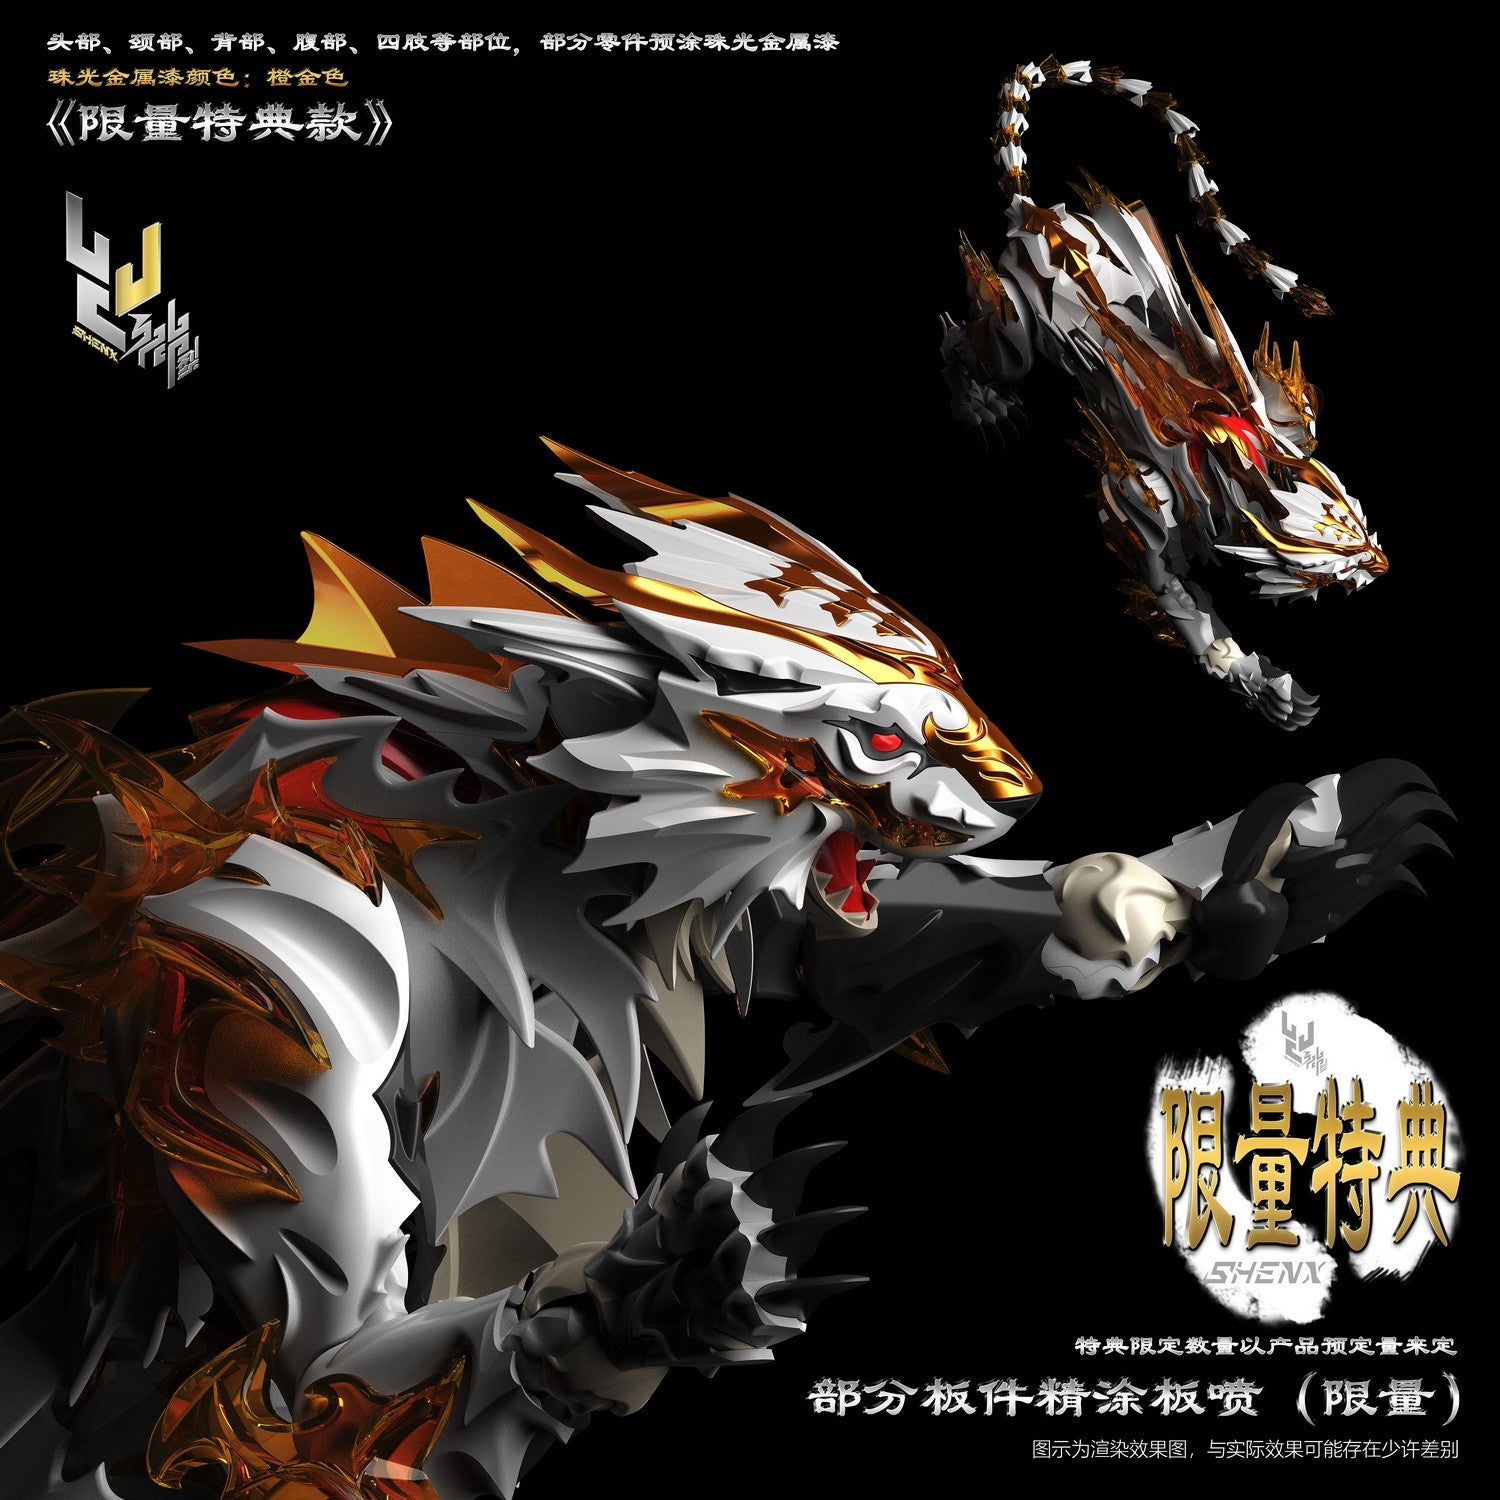 SHENX Bai Hu (White tiger) FX-7800